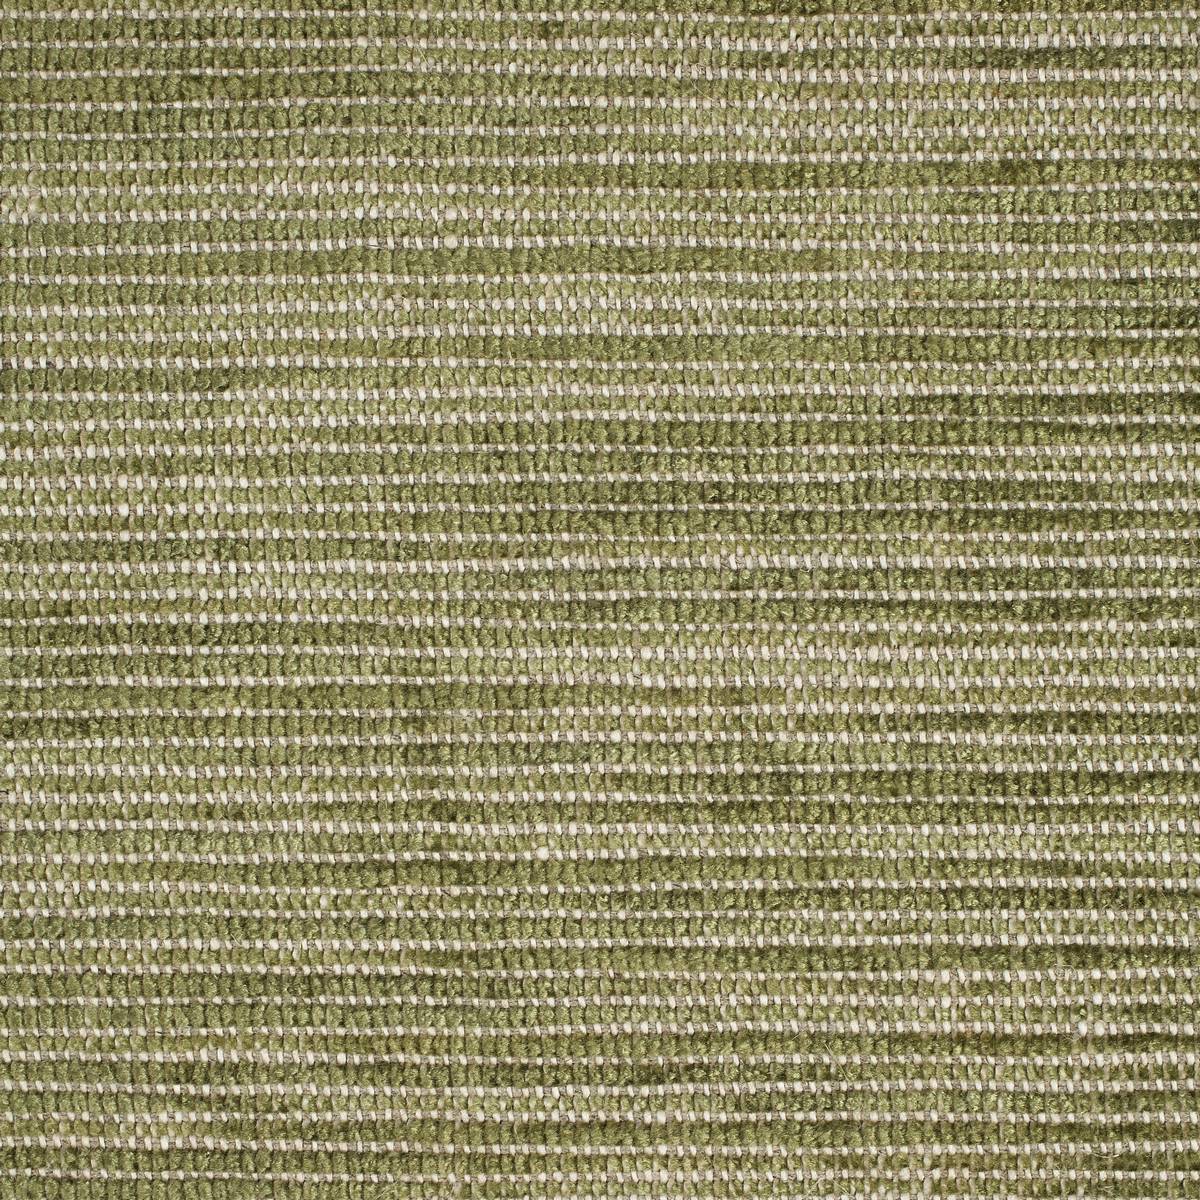 Munro Leaf Fabric by Zoffany